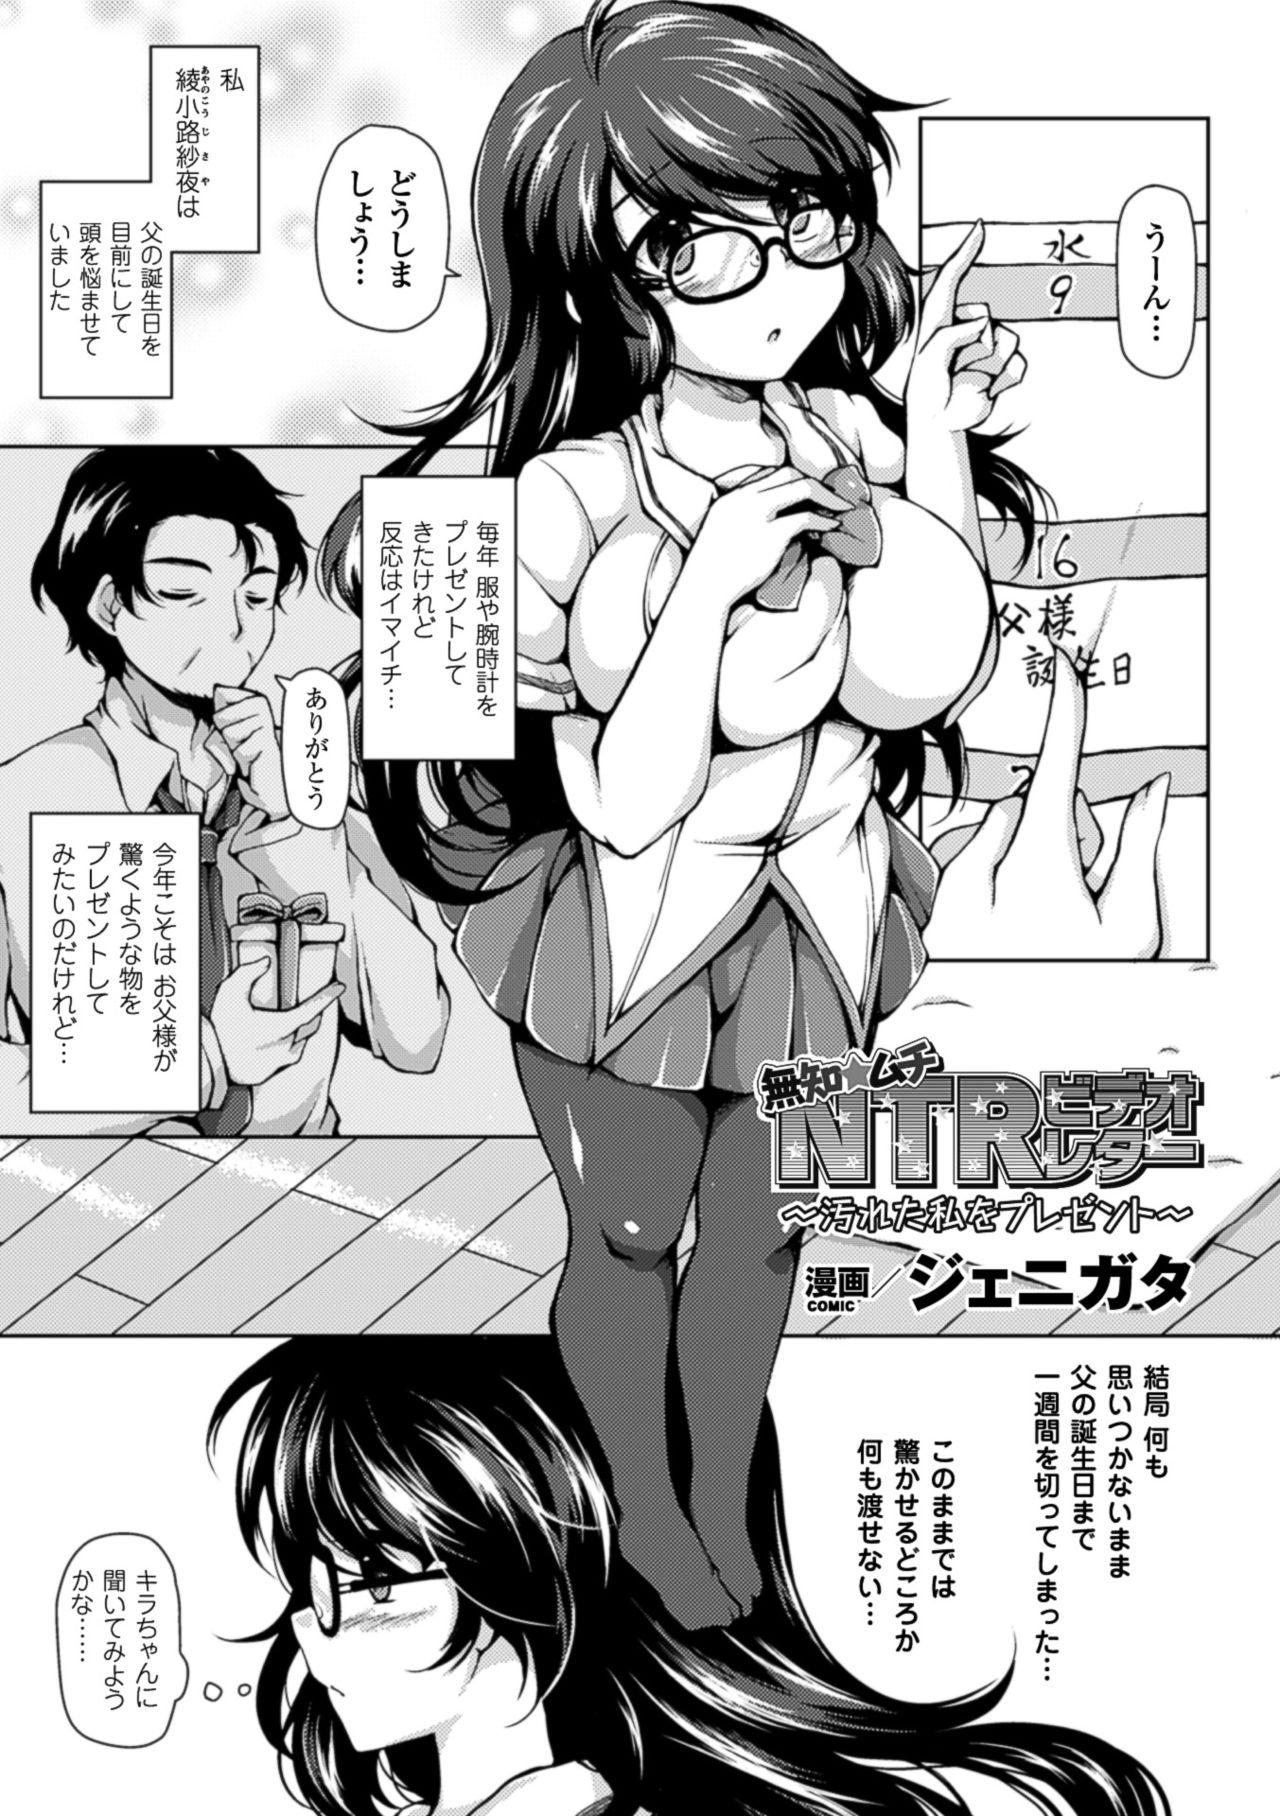 2D Comic Magazine Netorareta Kanojo kara no Video Letter de Utsu Bokki! Vol. 1 24